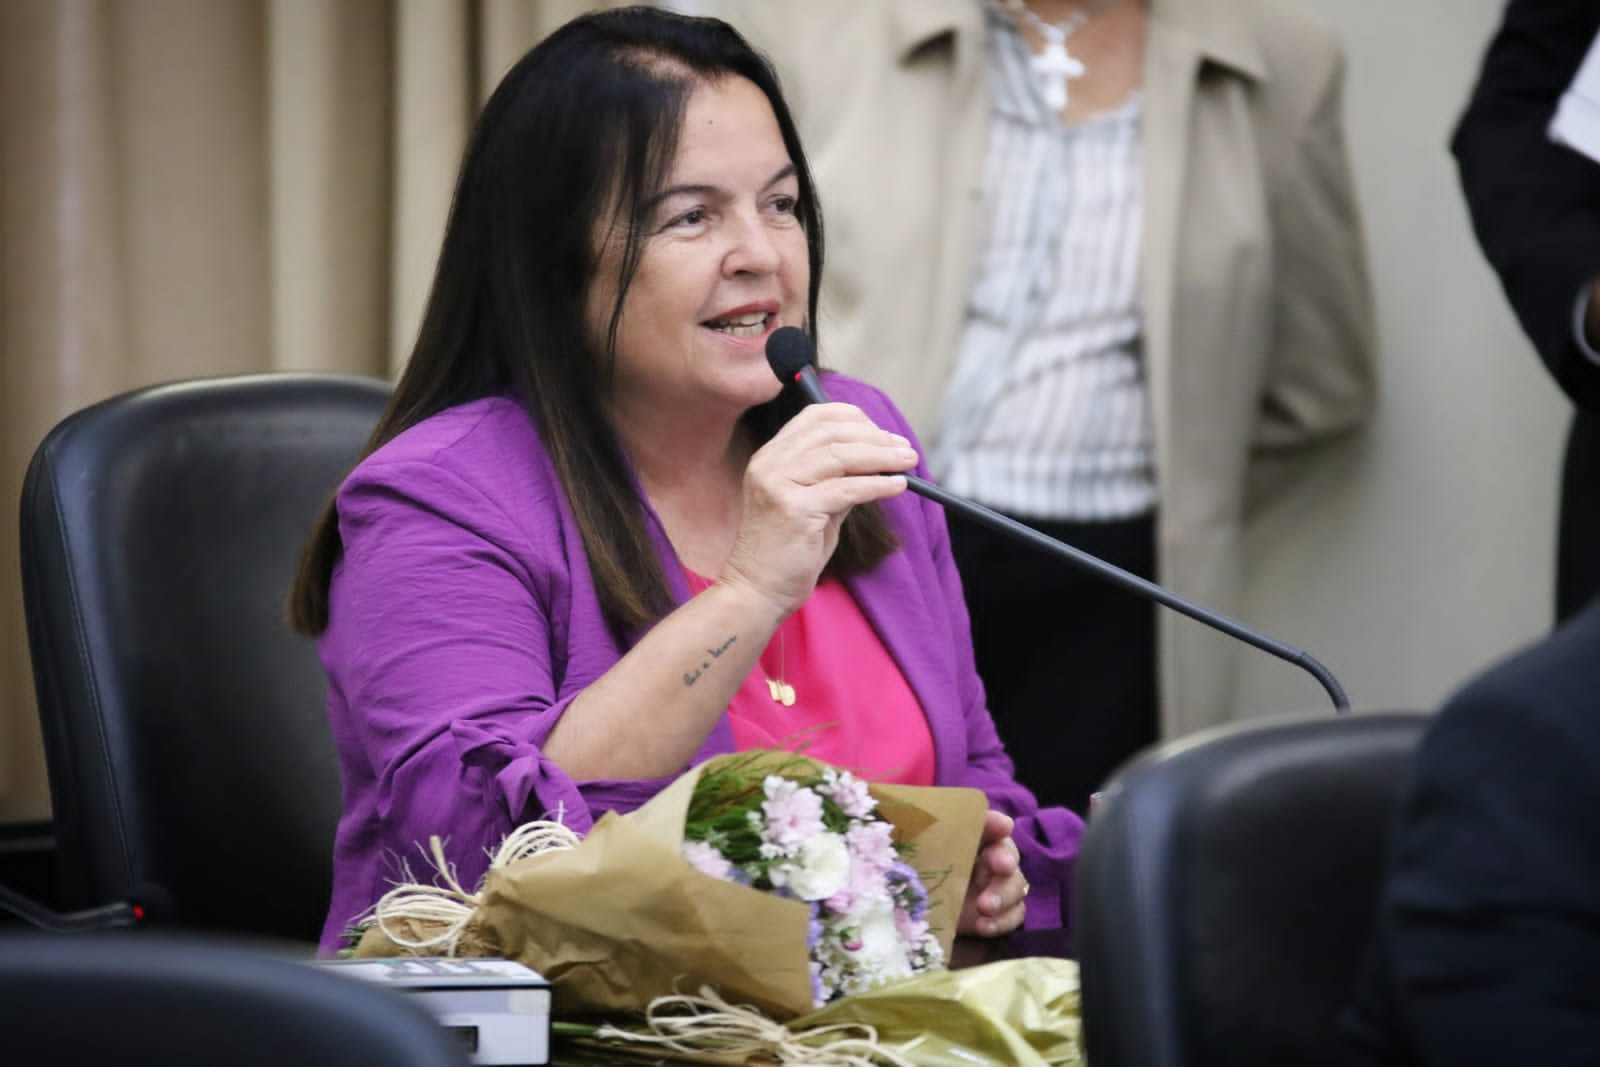 Nomeada Procuradora da Mulher da Assembleia Legislativa, deputada Fátima Canuto defende interiorização das ações